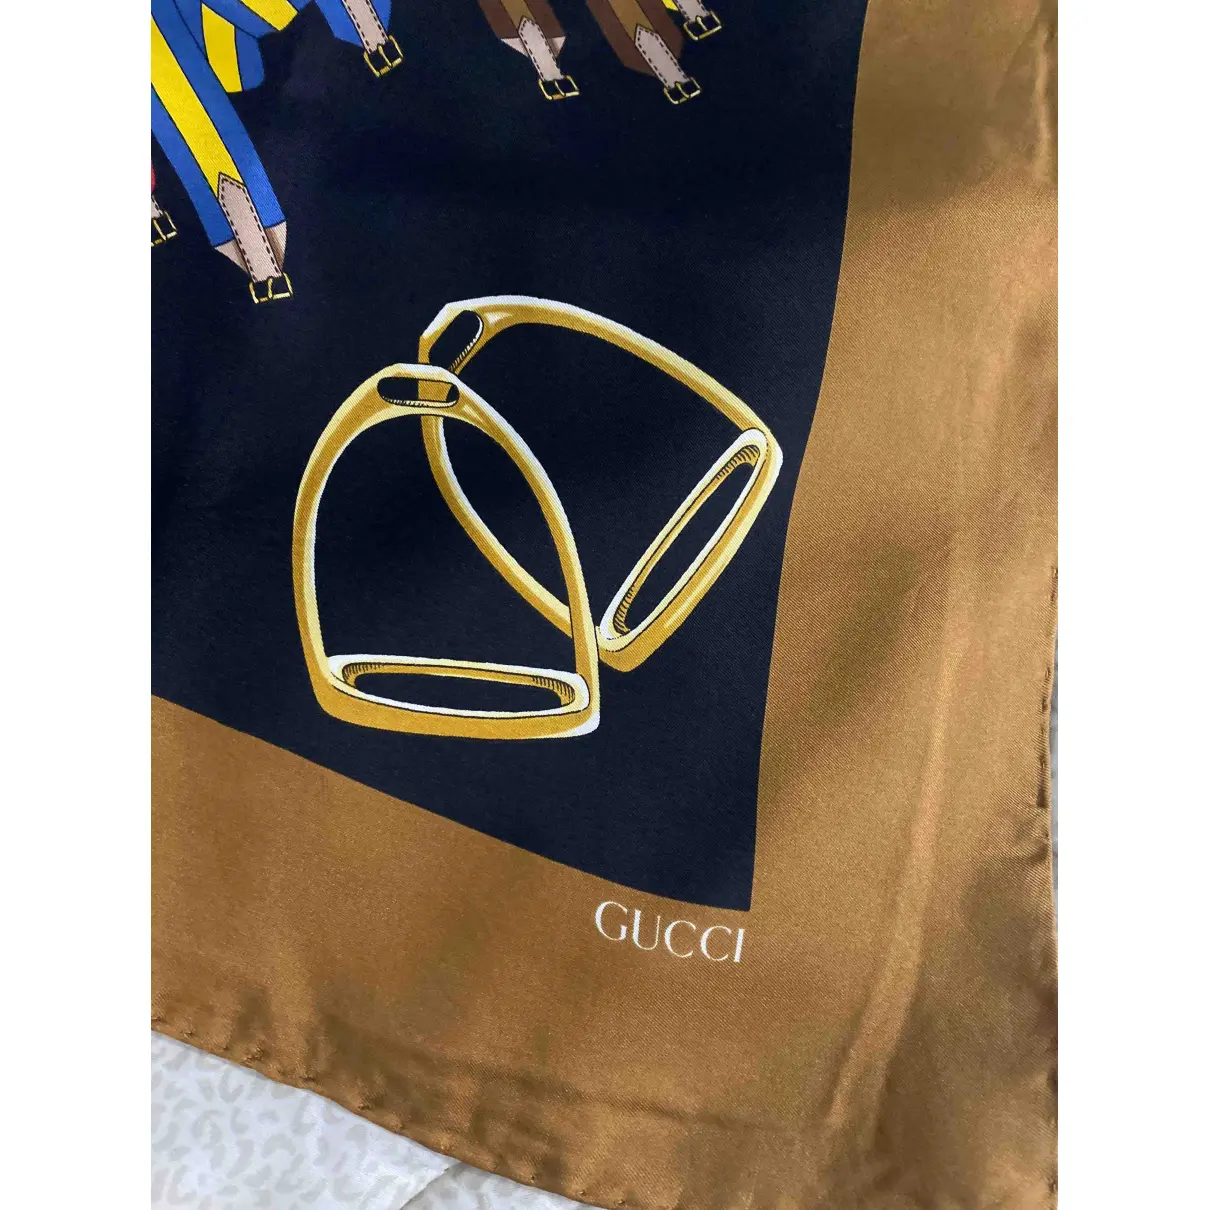 Buy Gucci Silk handkerchief online - Vintage